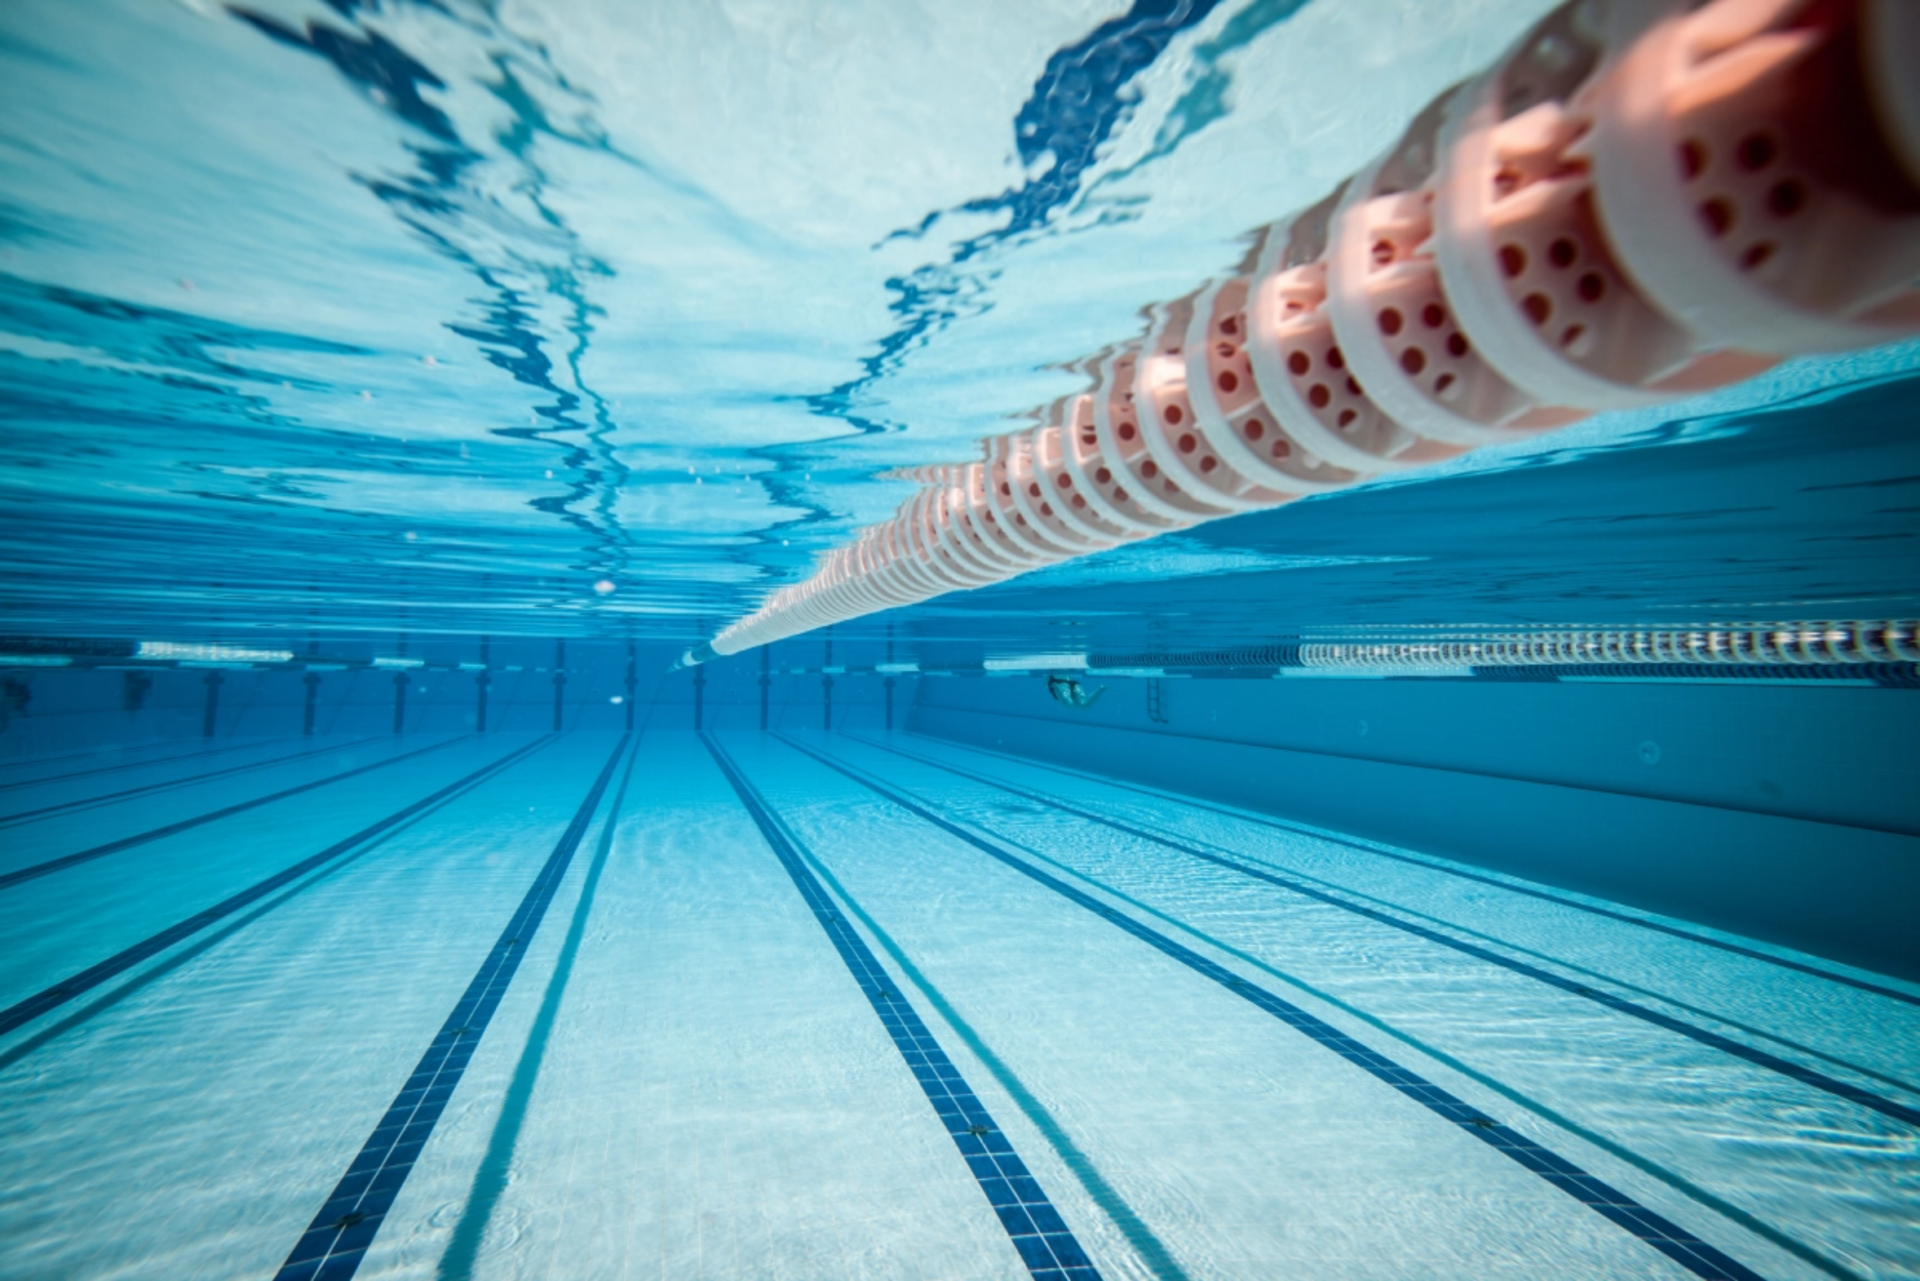 Onderwaterfoto van een zwembad - Stockfoto - Gemeente Leiden class=